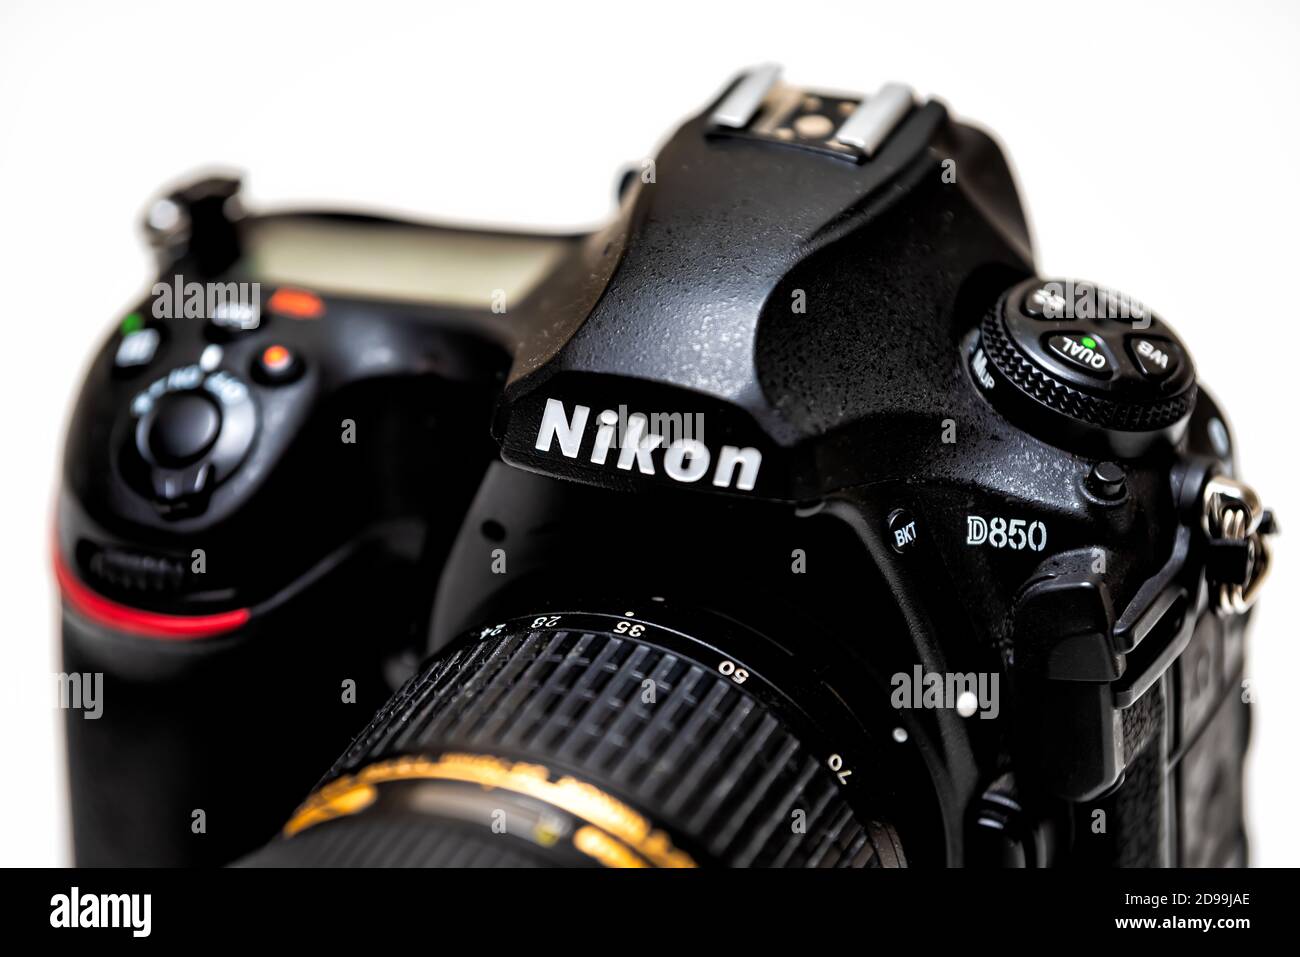 Herndon, USA - 1 novembre 2020: Macro closeup del giapponese made in Japan Nikon DSLR fotocamera reflex digitale a obiettivo singolo modello D850 isolato contro il whit Foto Stock